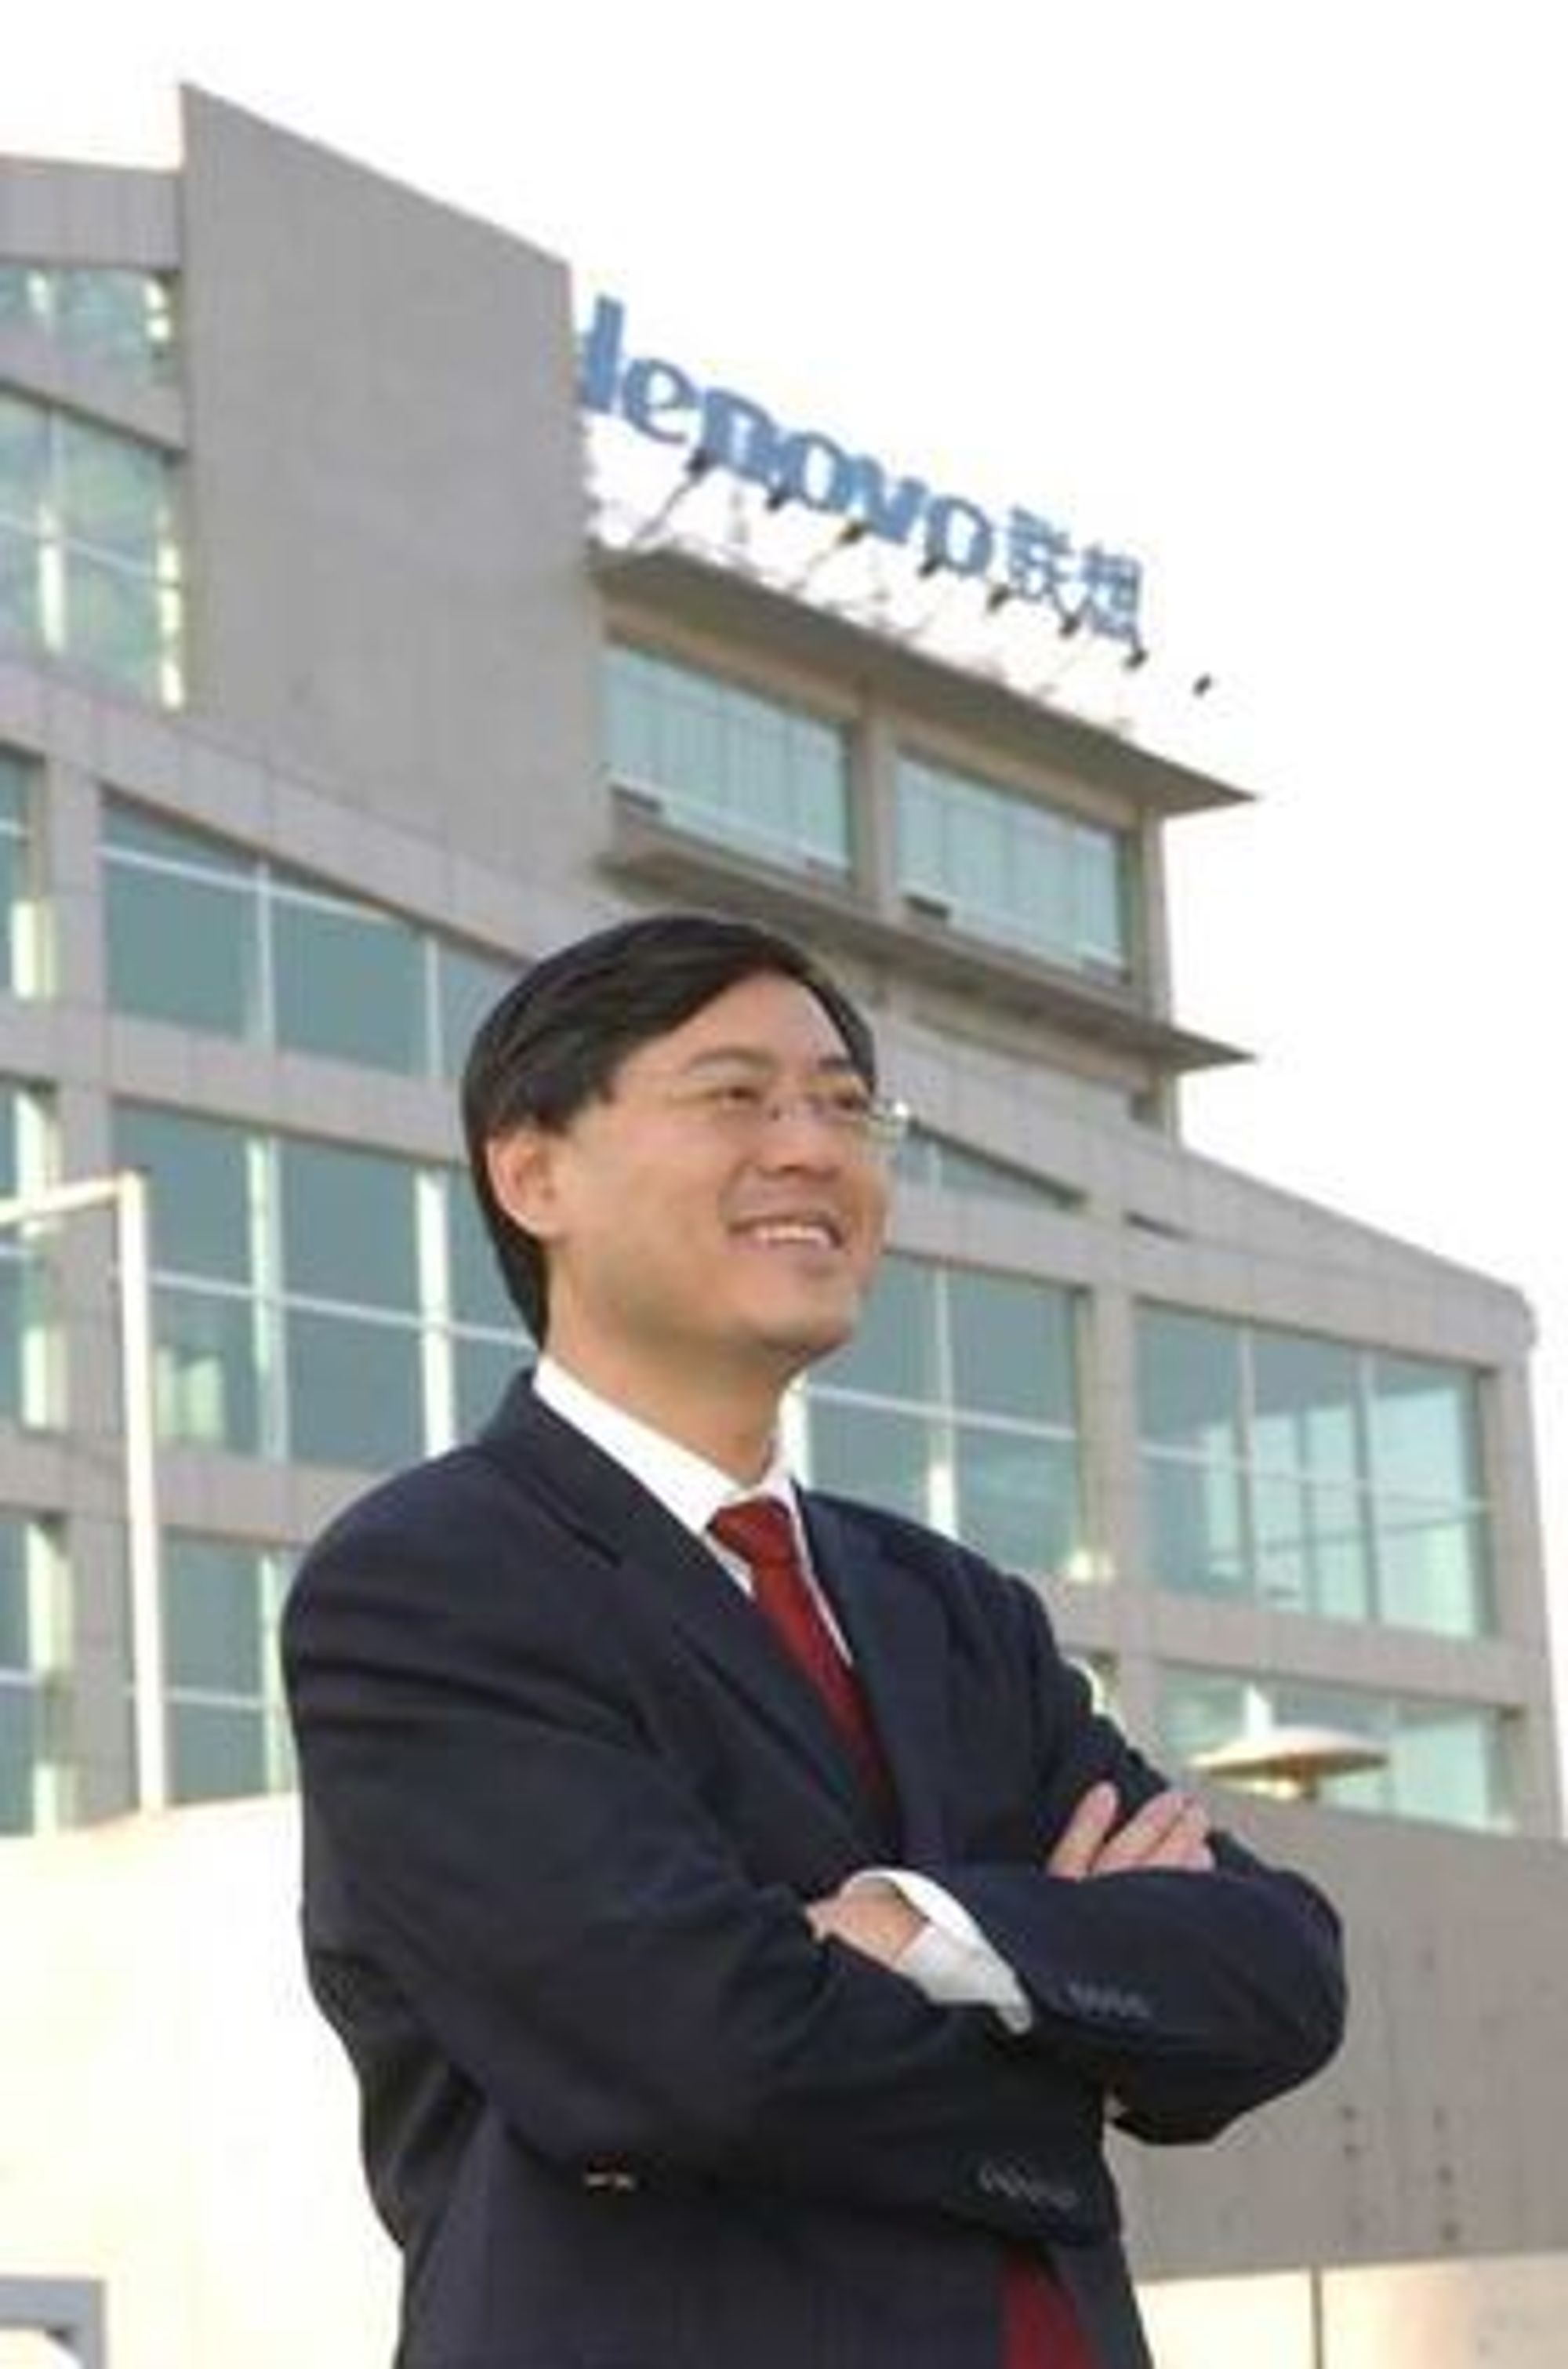 Lenovos toppsjef, Yang Yuanqing, skal være interessert i å snappe opp IBMs x86-servere. 